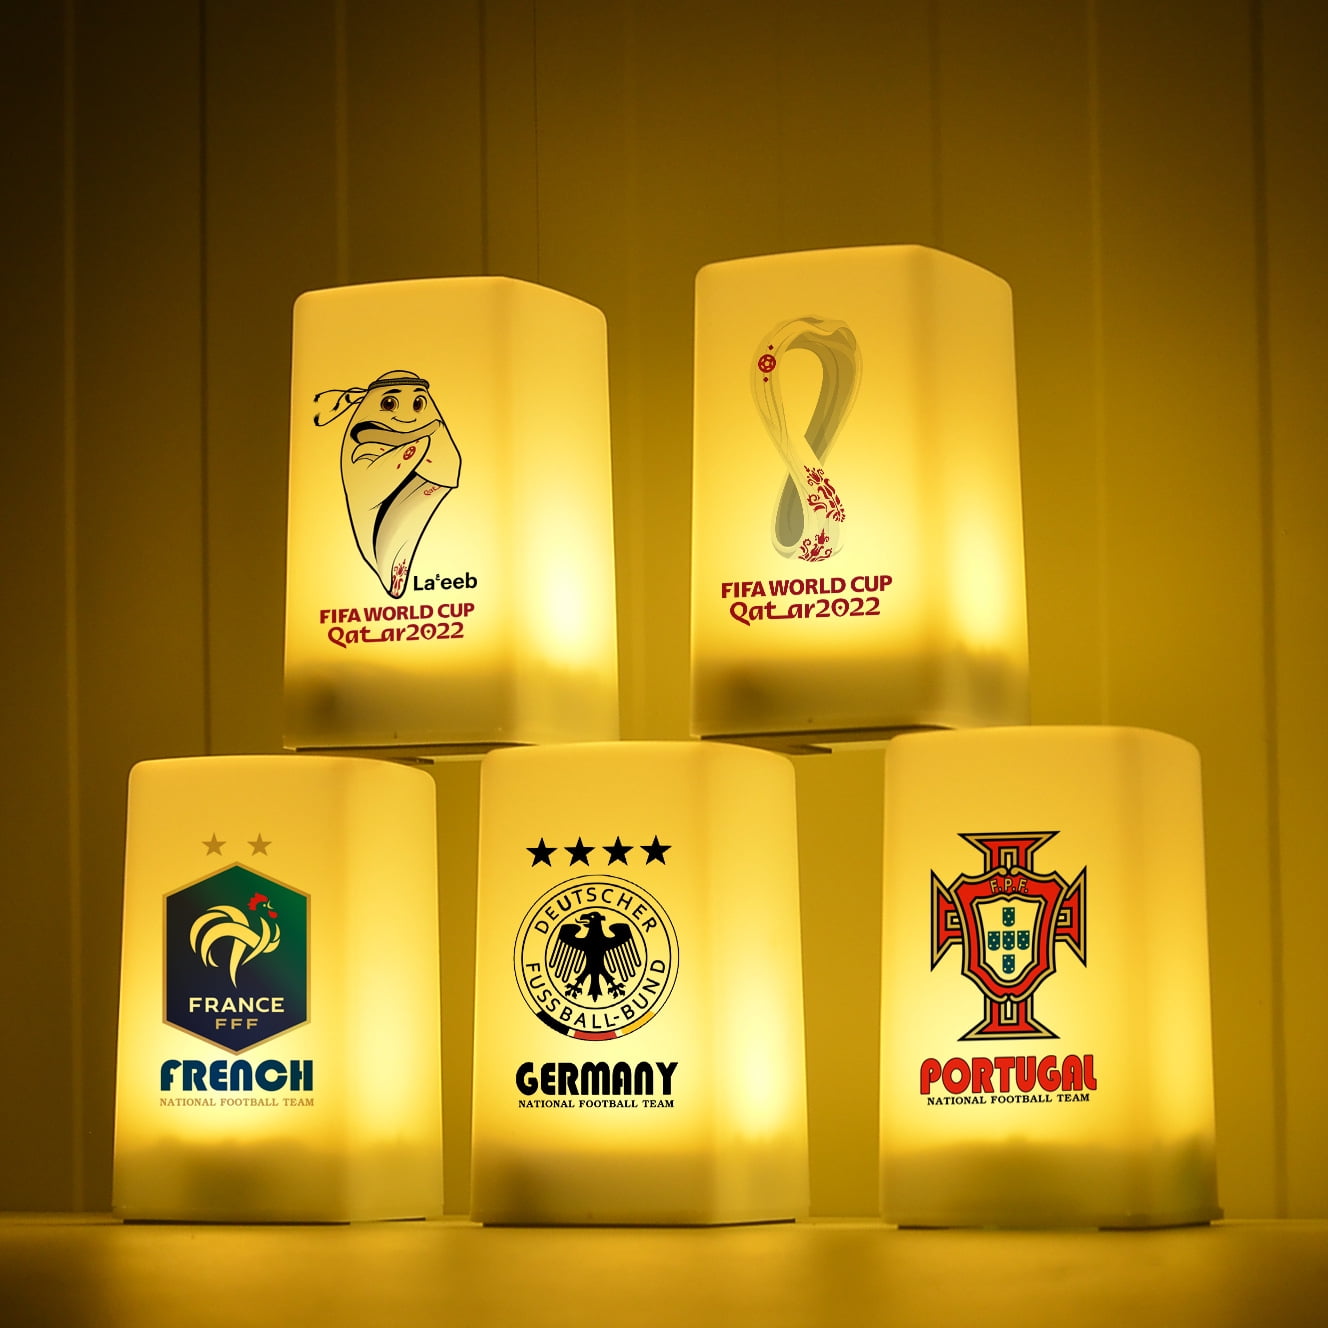 2022 Qatar FIFA World Cup Official Mascot La'eeb 3D PVC Sculpture